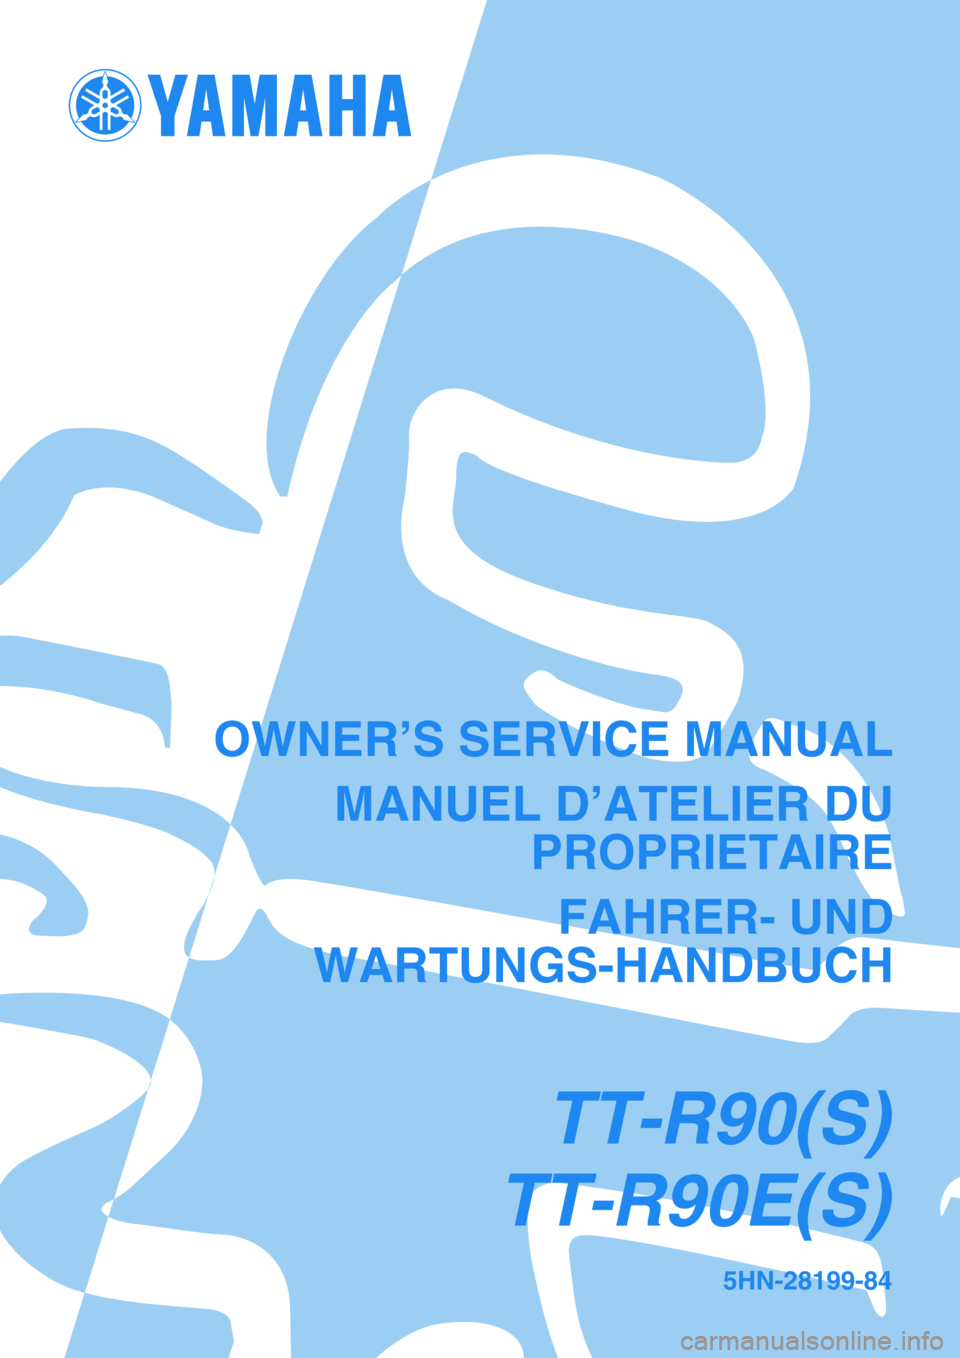 YAMAHA TTR90 2004  Betriebsanleitungen (in German) 5HN-28199-84
TT-R90(S)
TT-R90E(S)
OWNER’S SERVICE MANUAL
MANUEL D’ATELIER DU
PROPRIETAIRE
FAHRER- UND
WARTUNGS-HANDBUCH 